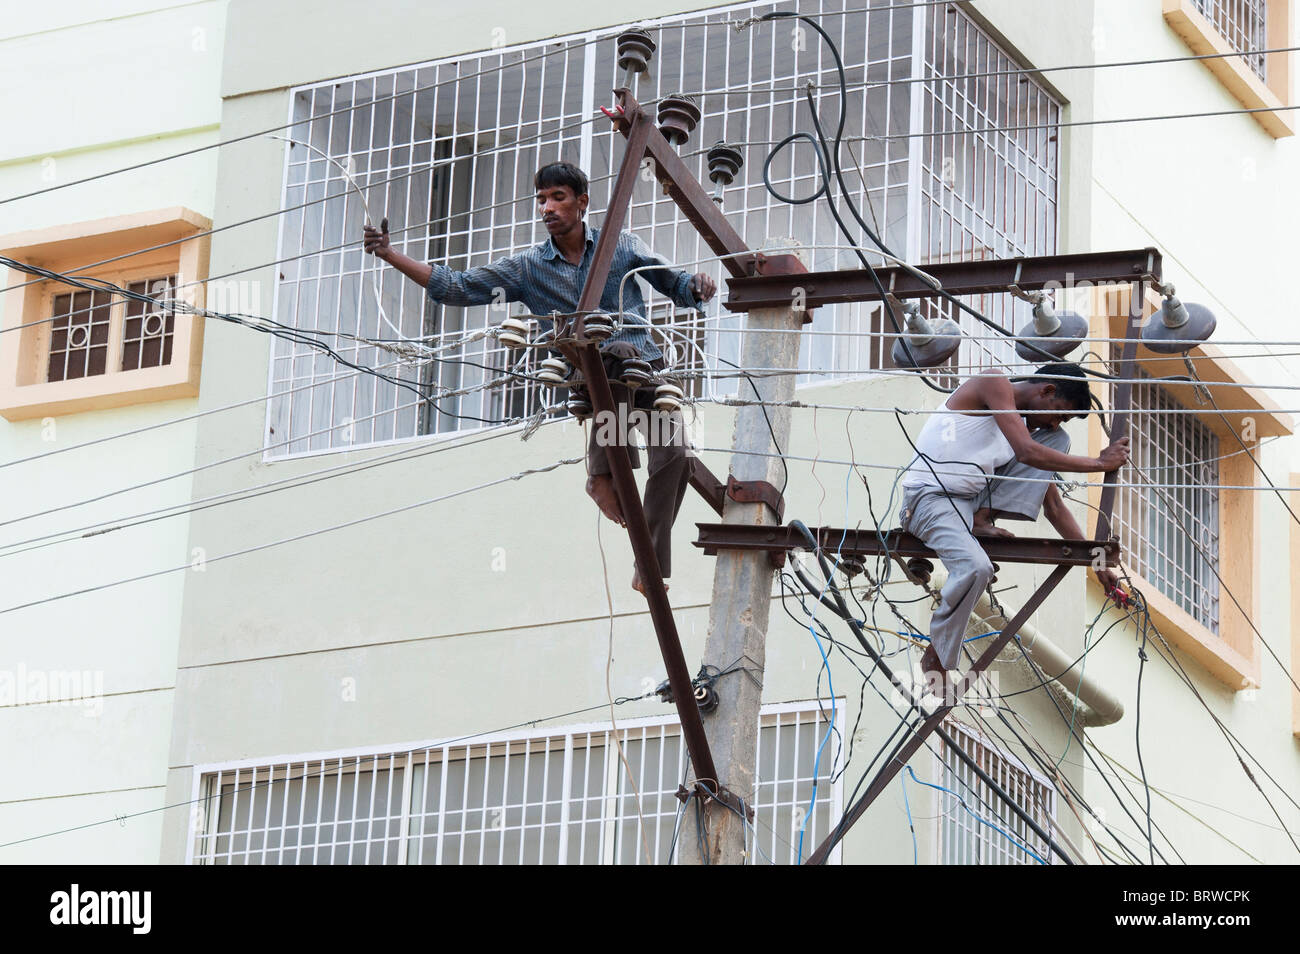 Electrician indiennes d'un pylône d'électricité dans les rues de Puttaparthi, Andhra Pradesh, Inde Banque D'Images